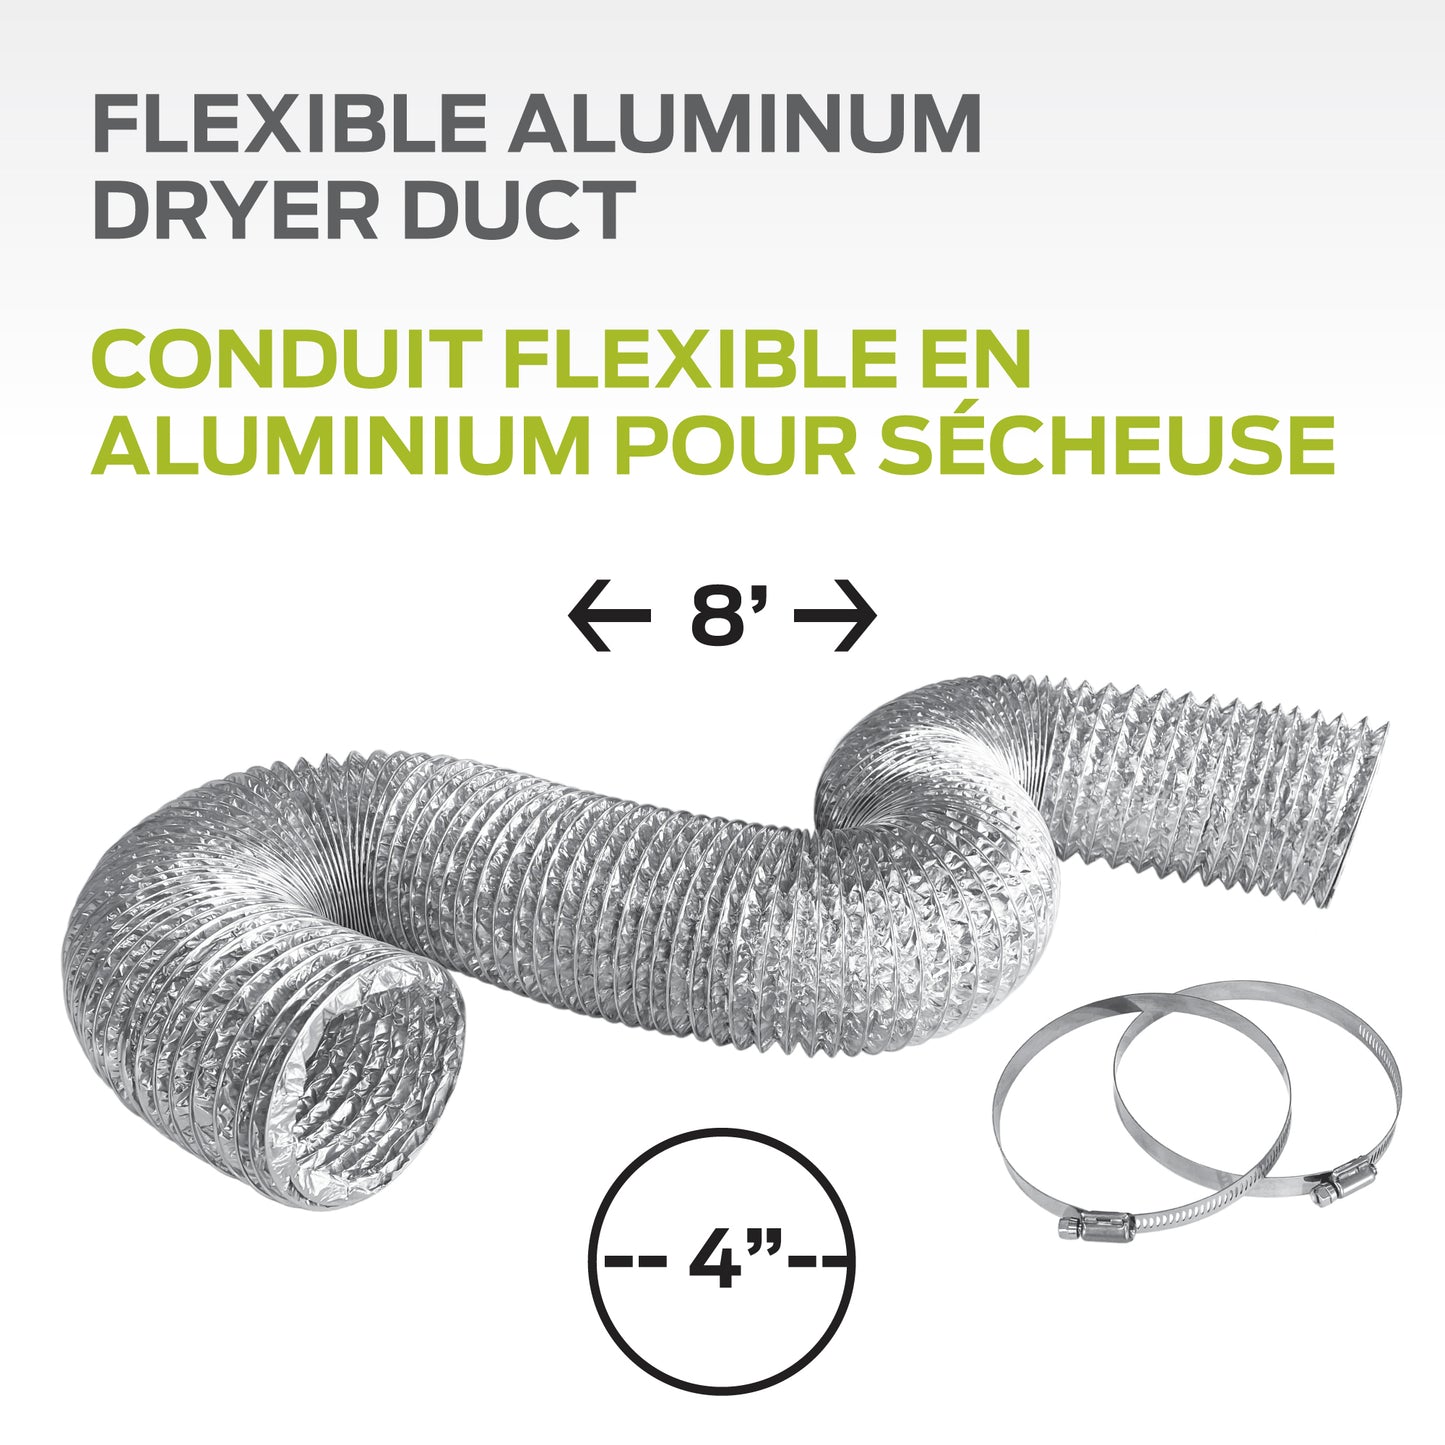 Conduit flexible en aluminium pour sécheuse - 4’’ x 8’ / 10,2 cm x 2,4 m